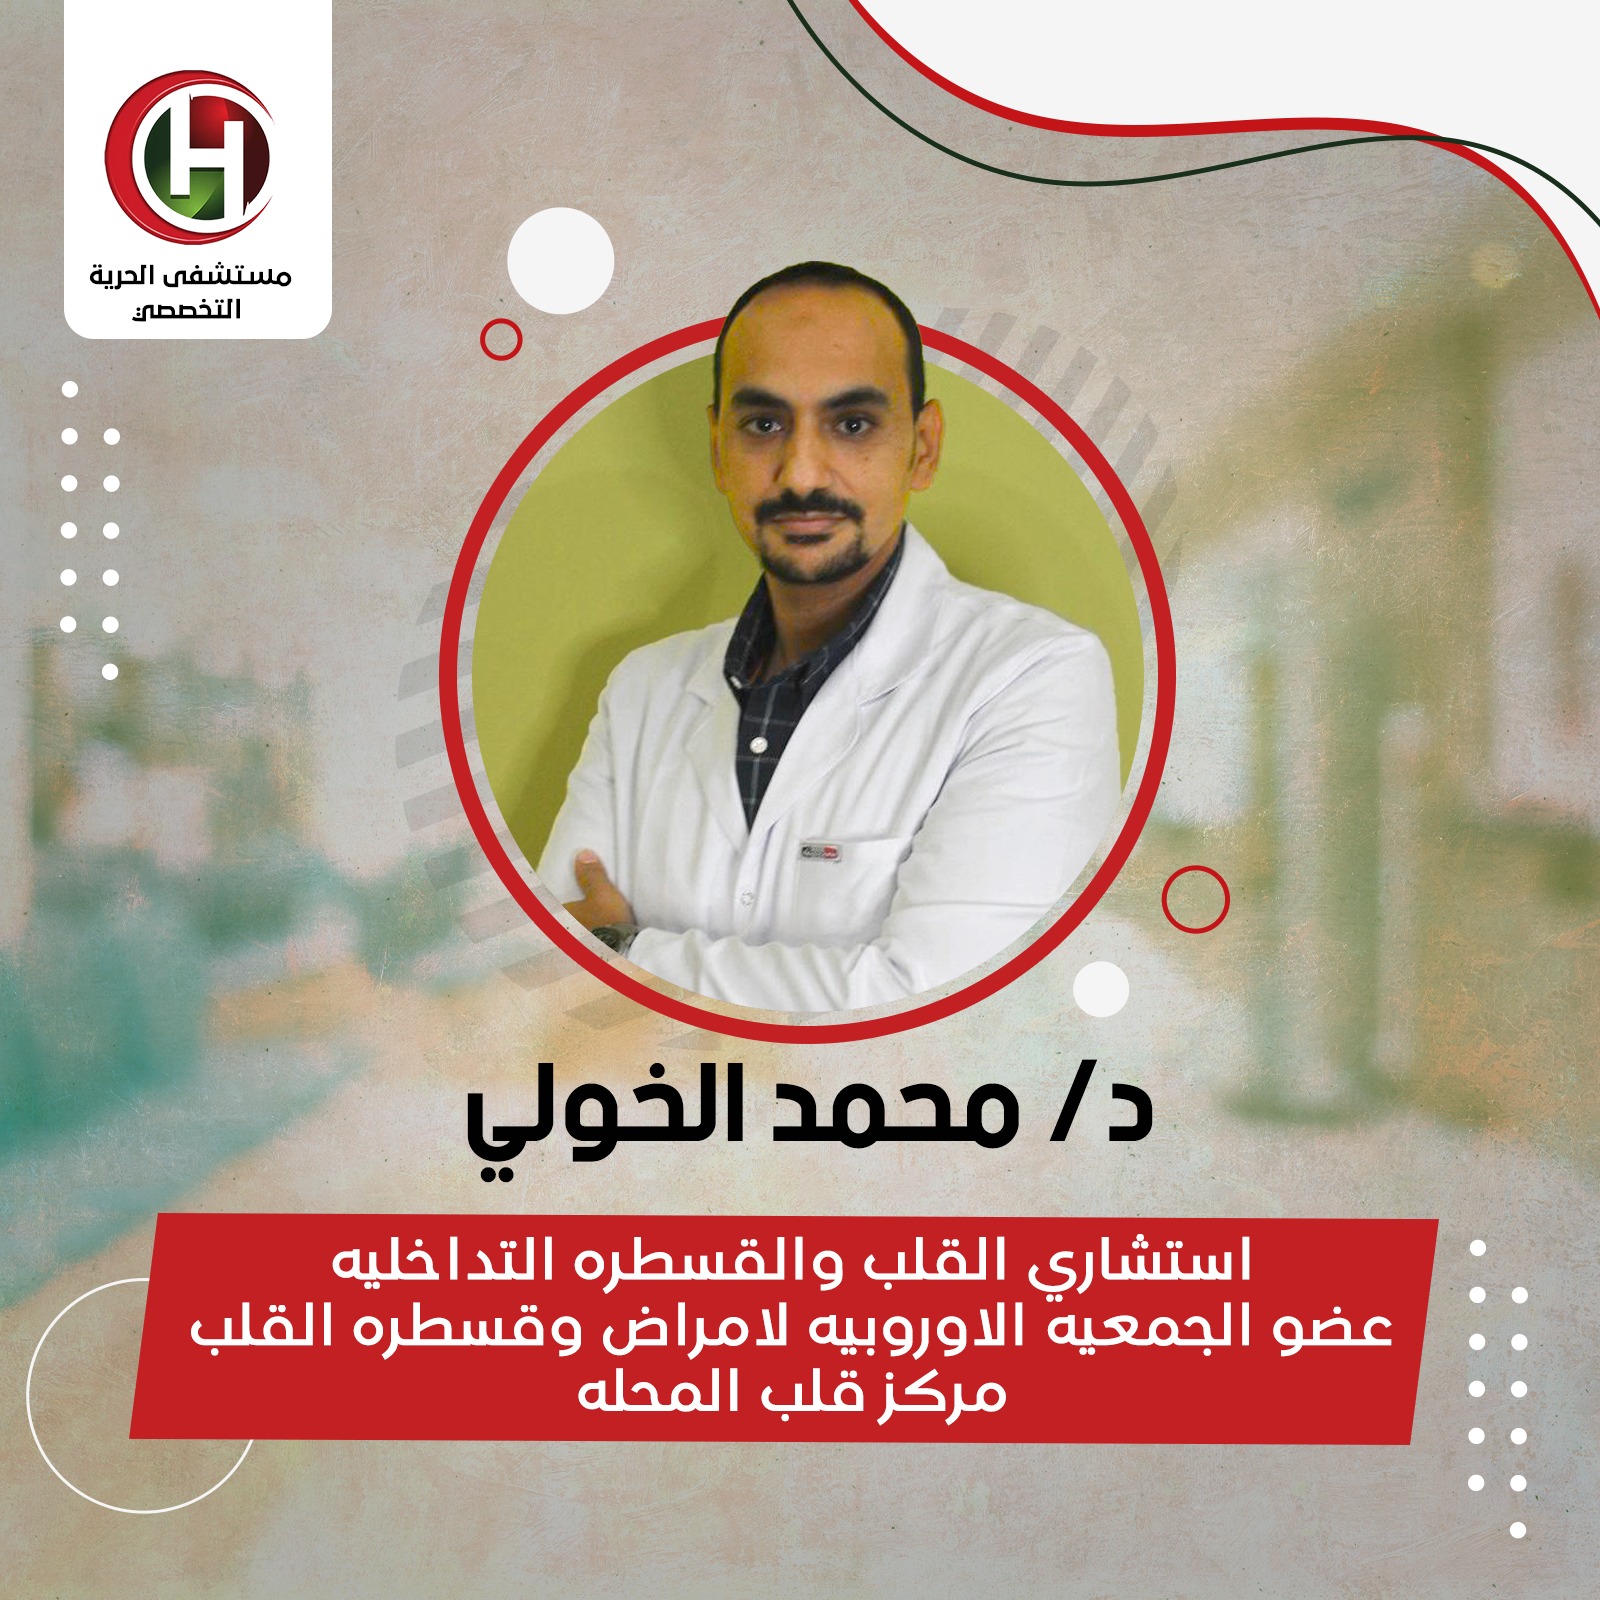 Dr. Muhammad Al-Khouli